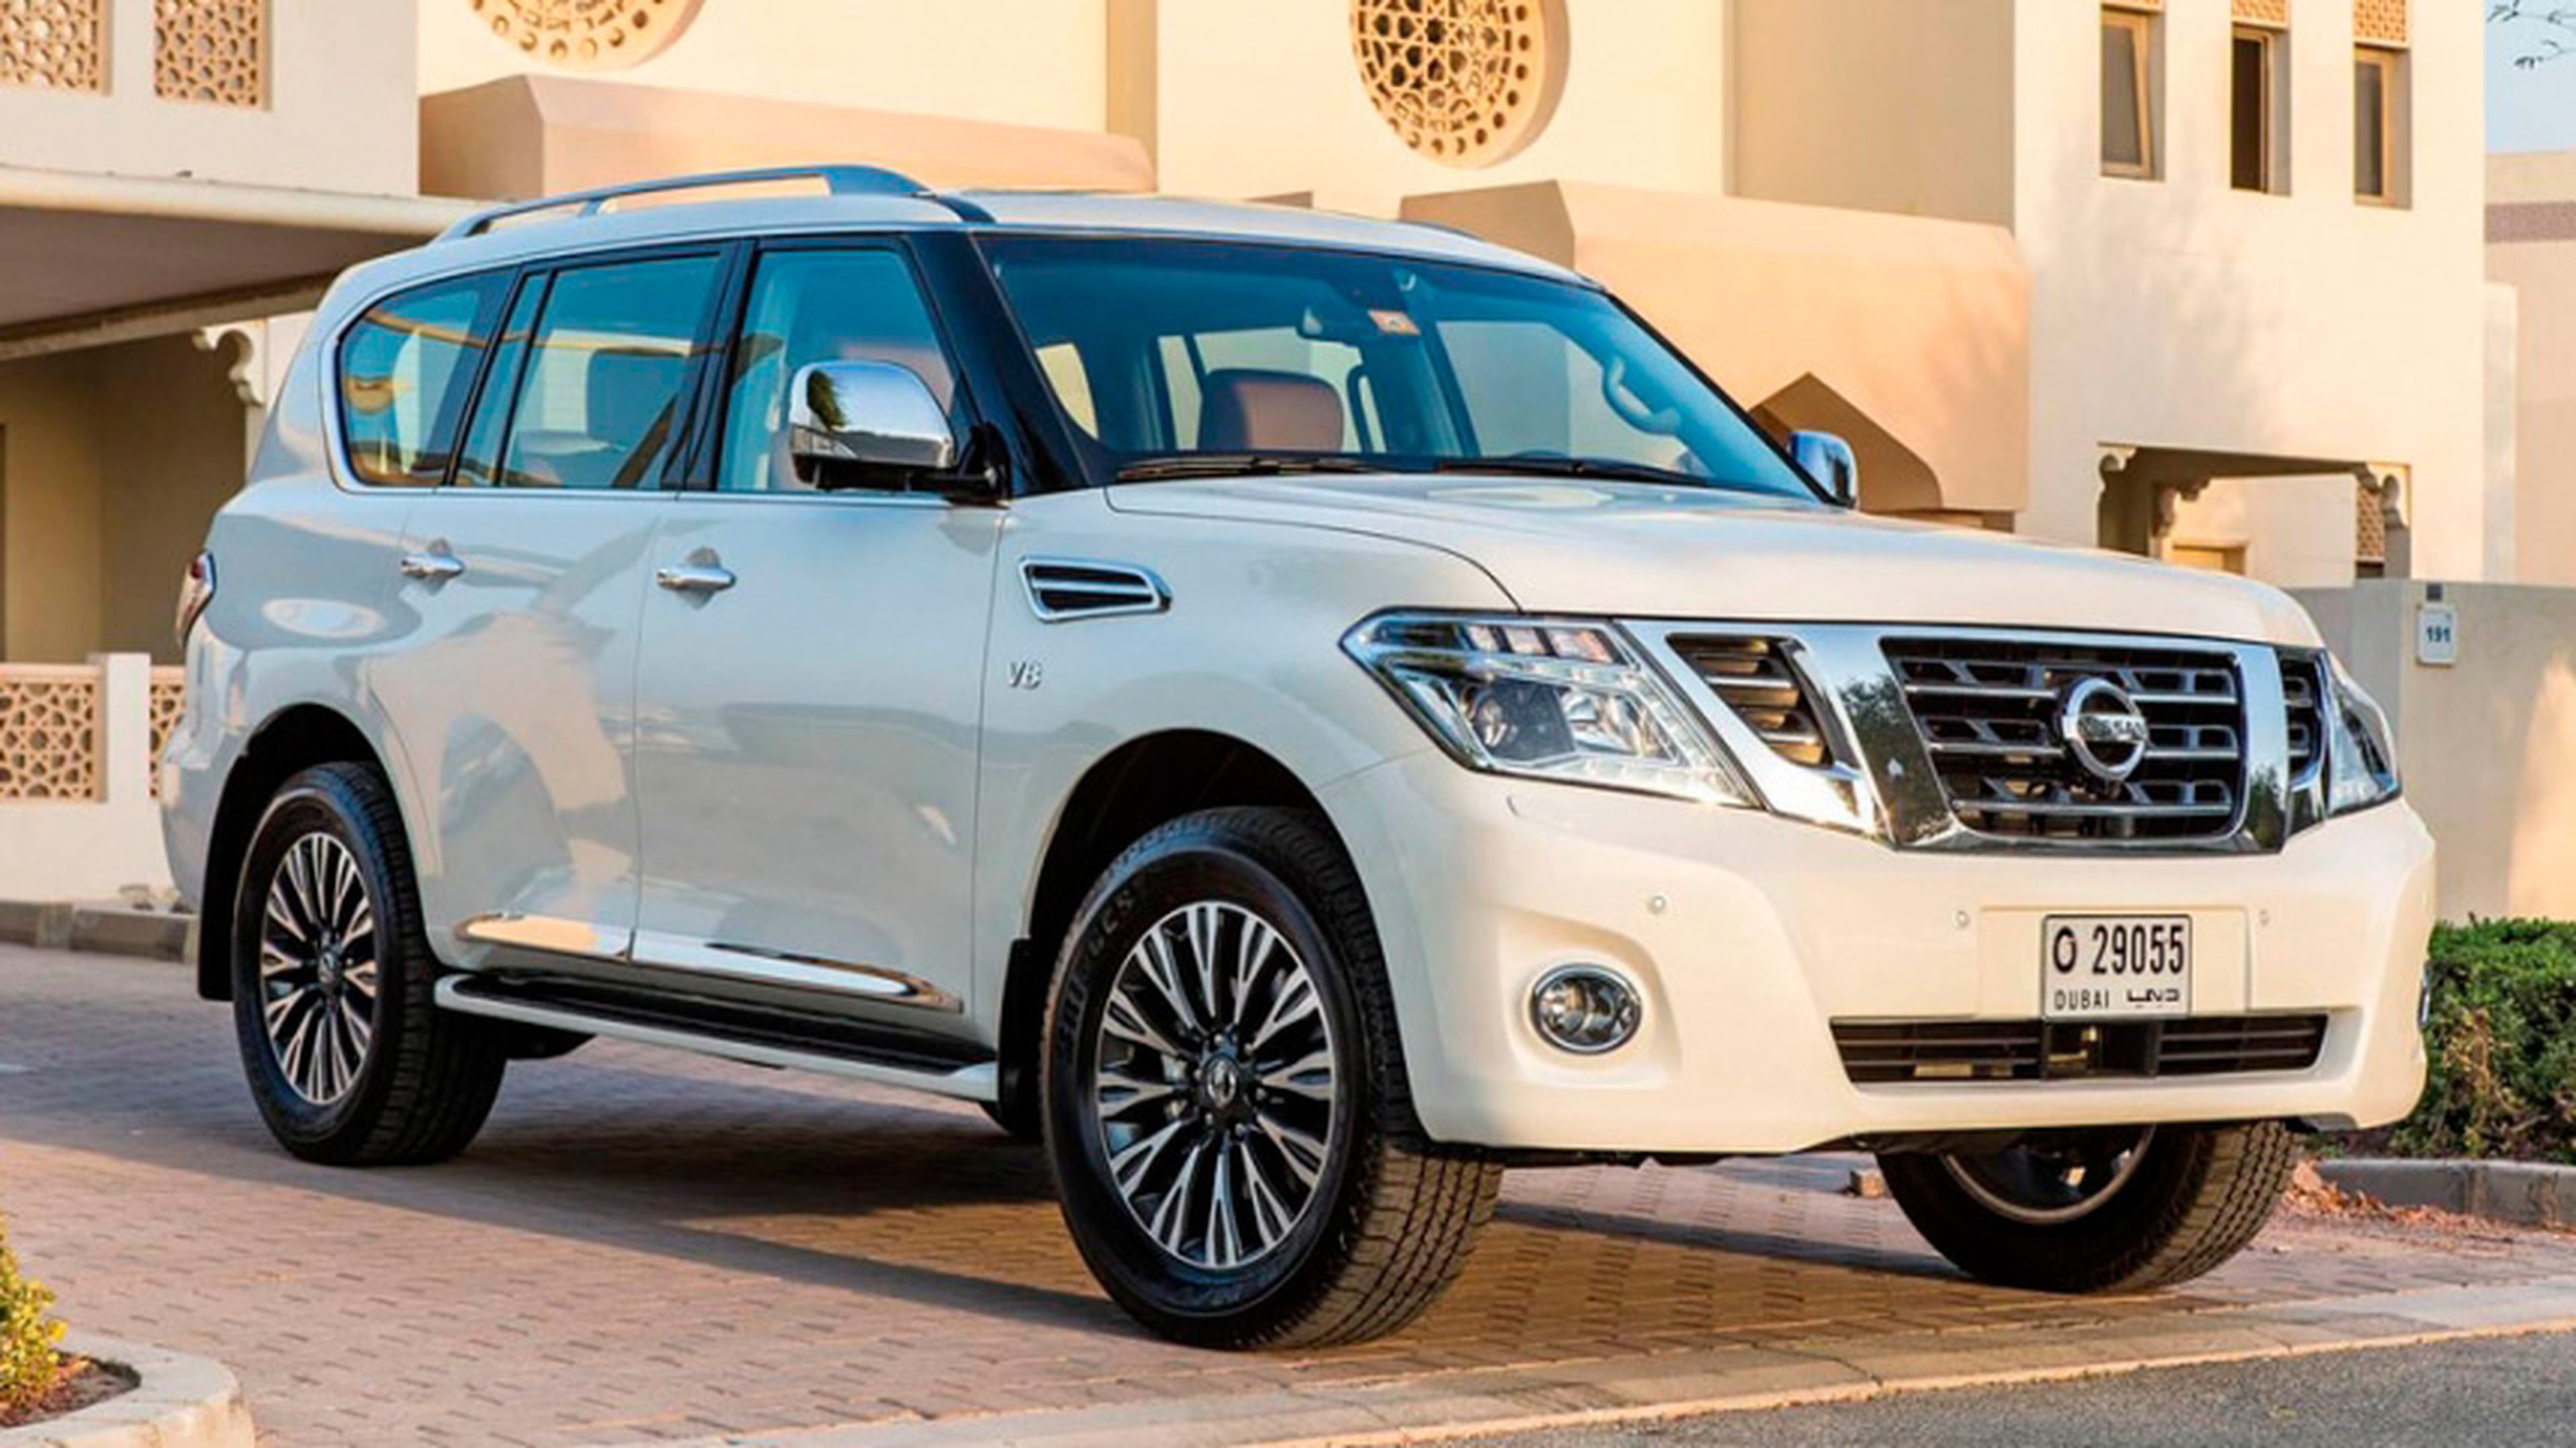 El Nissan Patrol 2014 debuta en el Salón de Dubai 2013